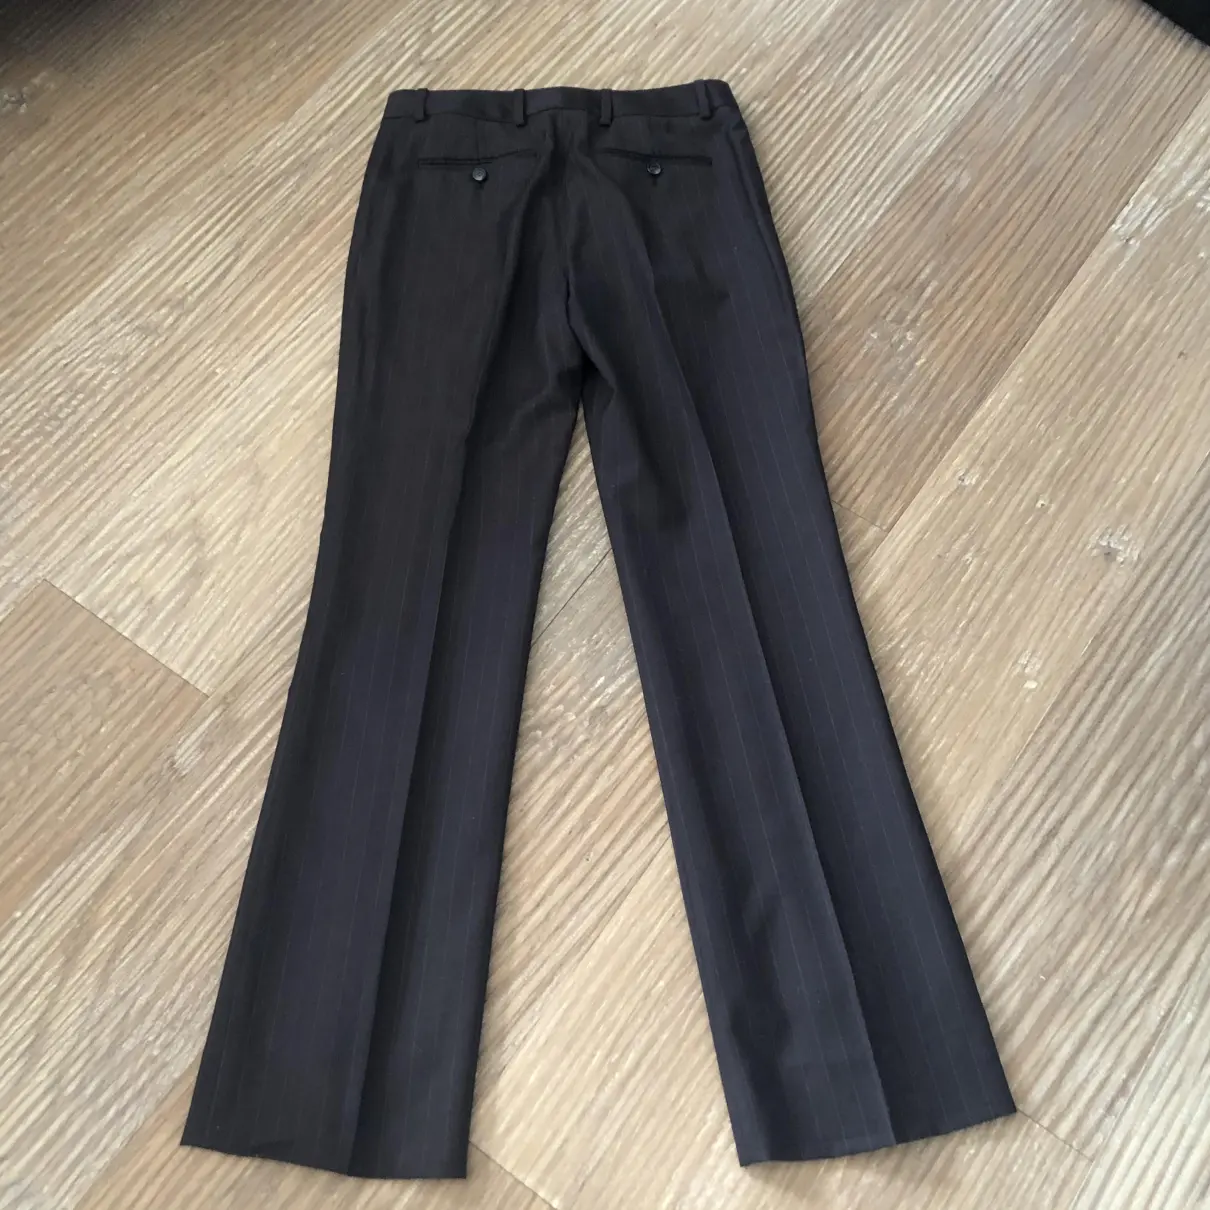 Buy Yves Saint Laurent Wool straight pants online